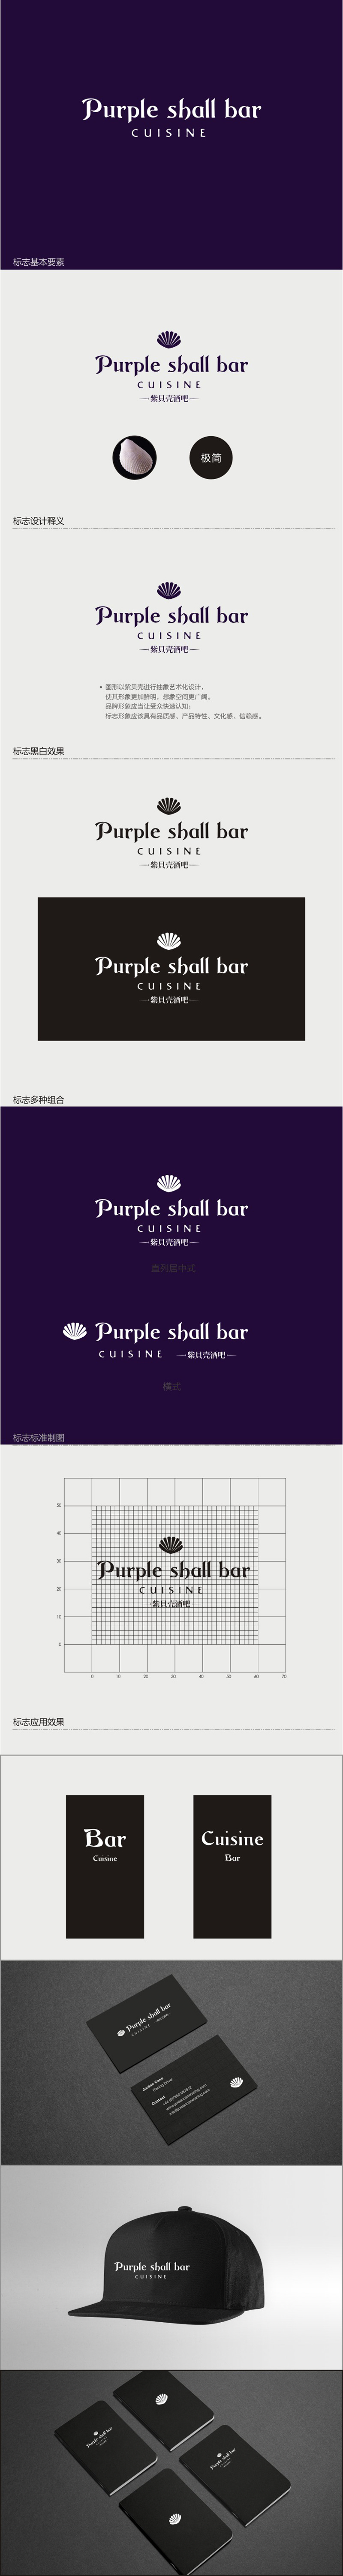 夏孟的紫贝壳酒吧/餐饮Purple shall bar/cuisinelogo设计